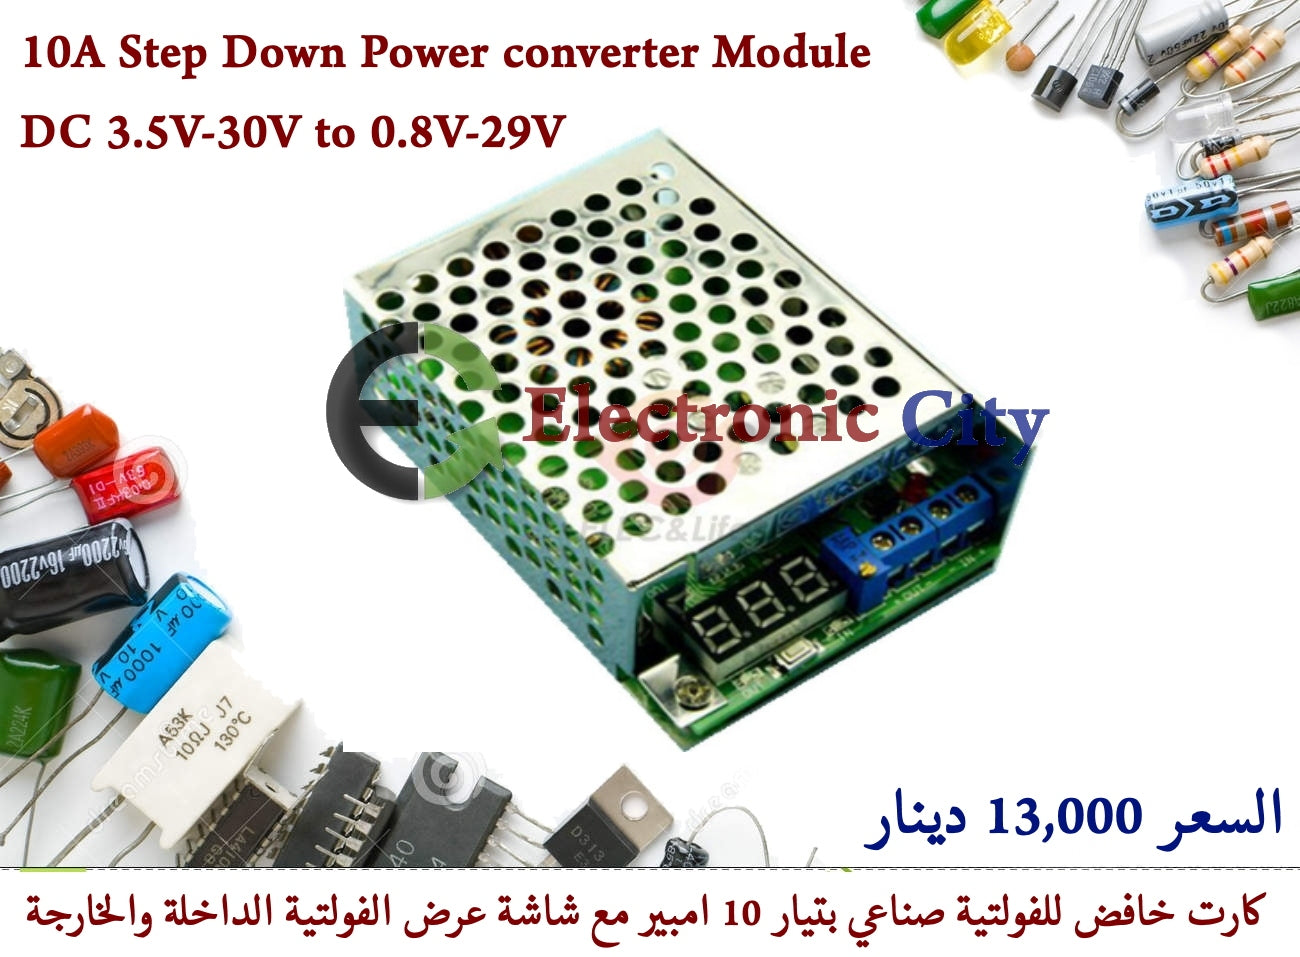 10A Step Down Power converter Module DC 3.5V-30V to 0.8V-29V